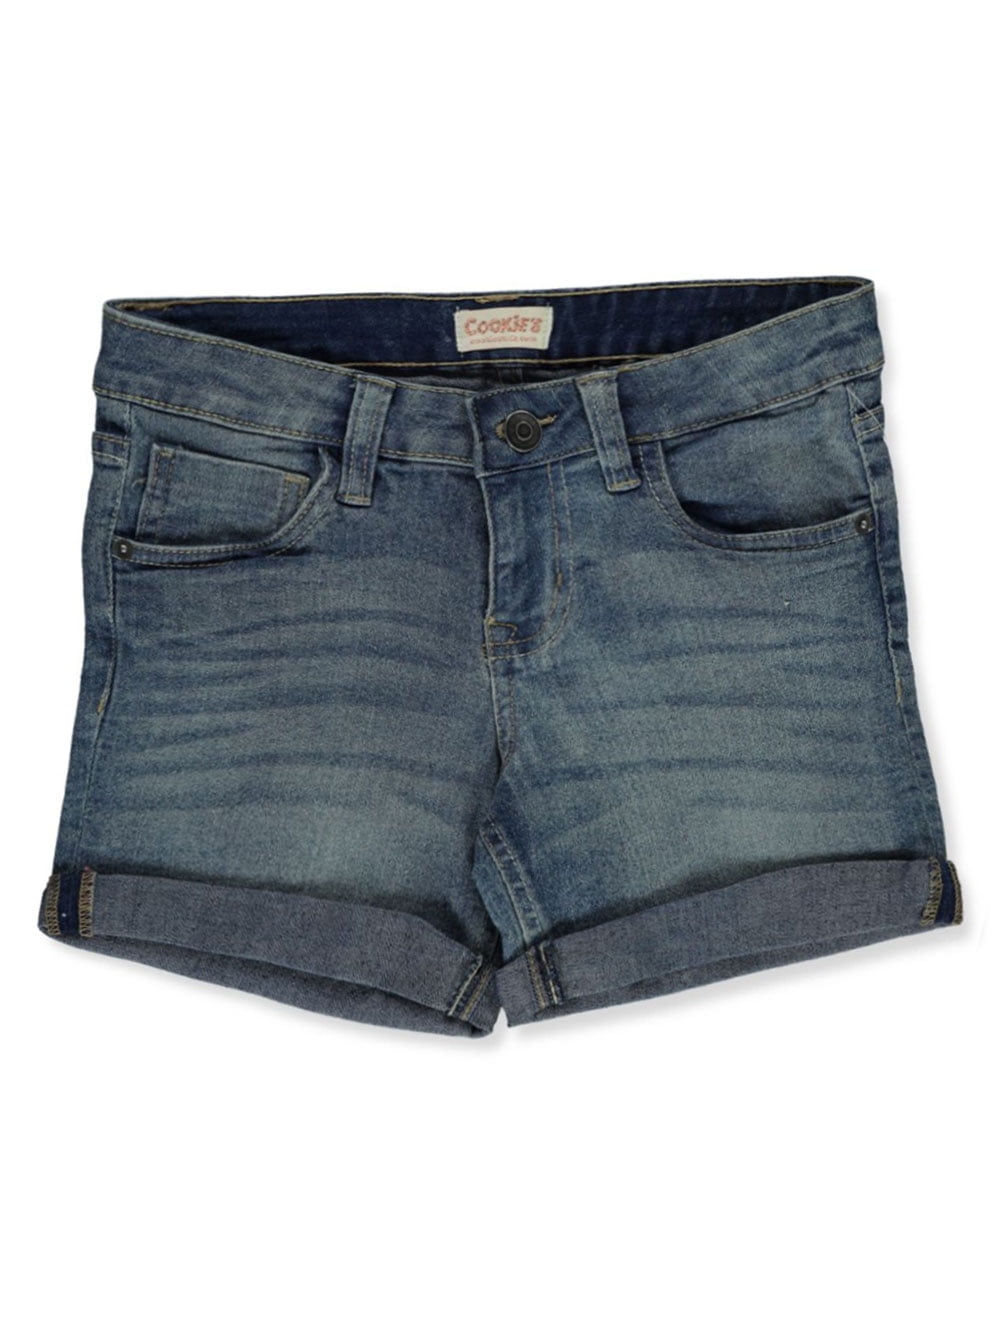 Cookie's Girls' Denim Shorts - light blue, 6 (Little Girls) - Walmart.com